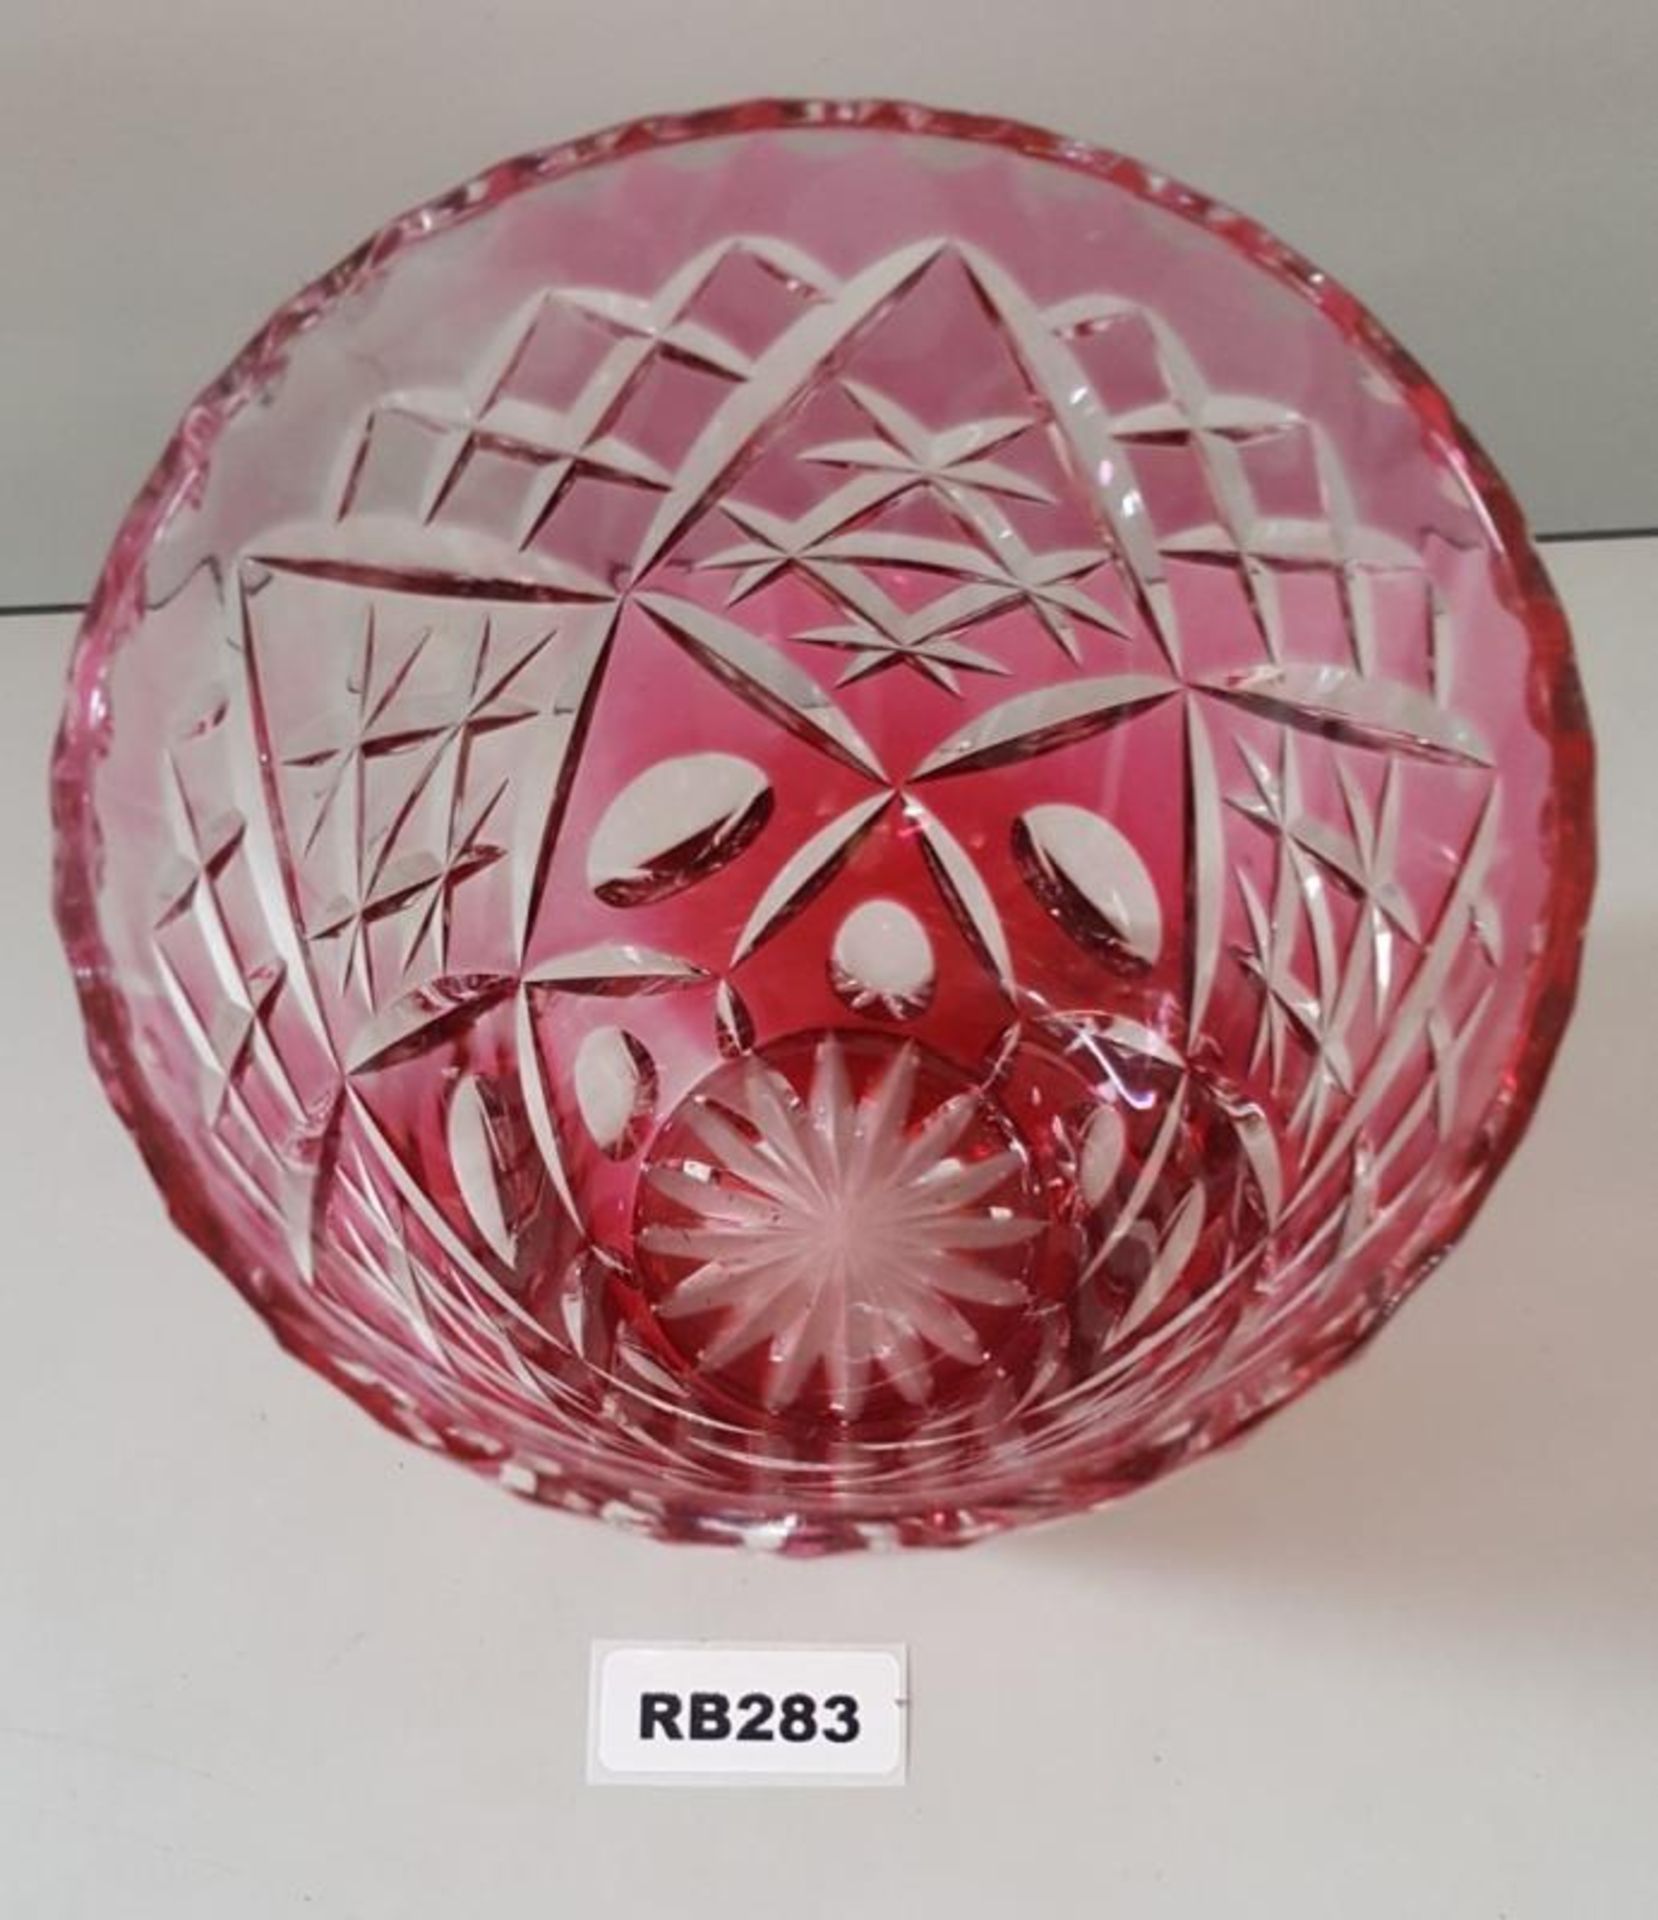 1 x Bohemian Cranberry Cut Glass Vase H20cm - Ref RB283 E - CL334 - Location: Altrincham WA14 NO VAT - Image 2 of 4